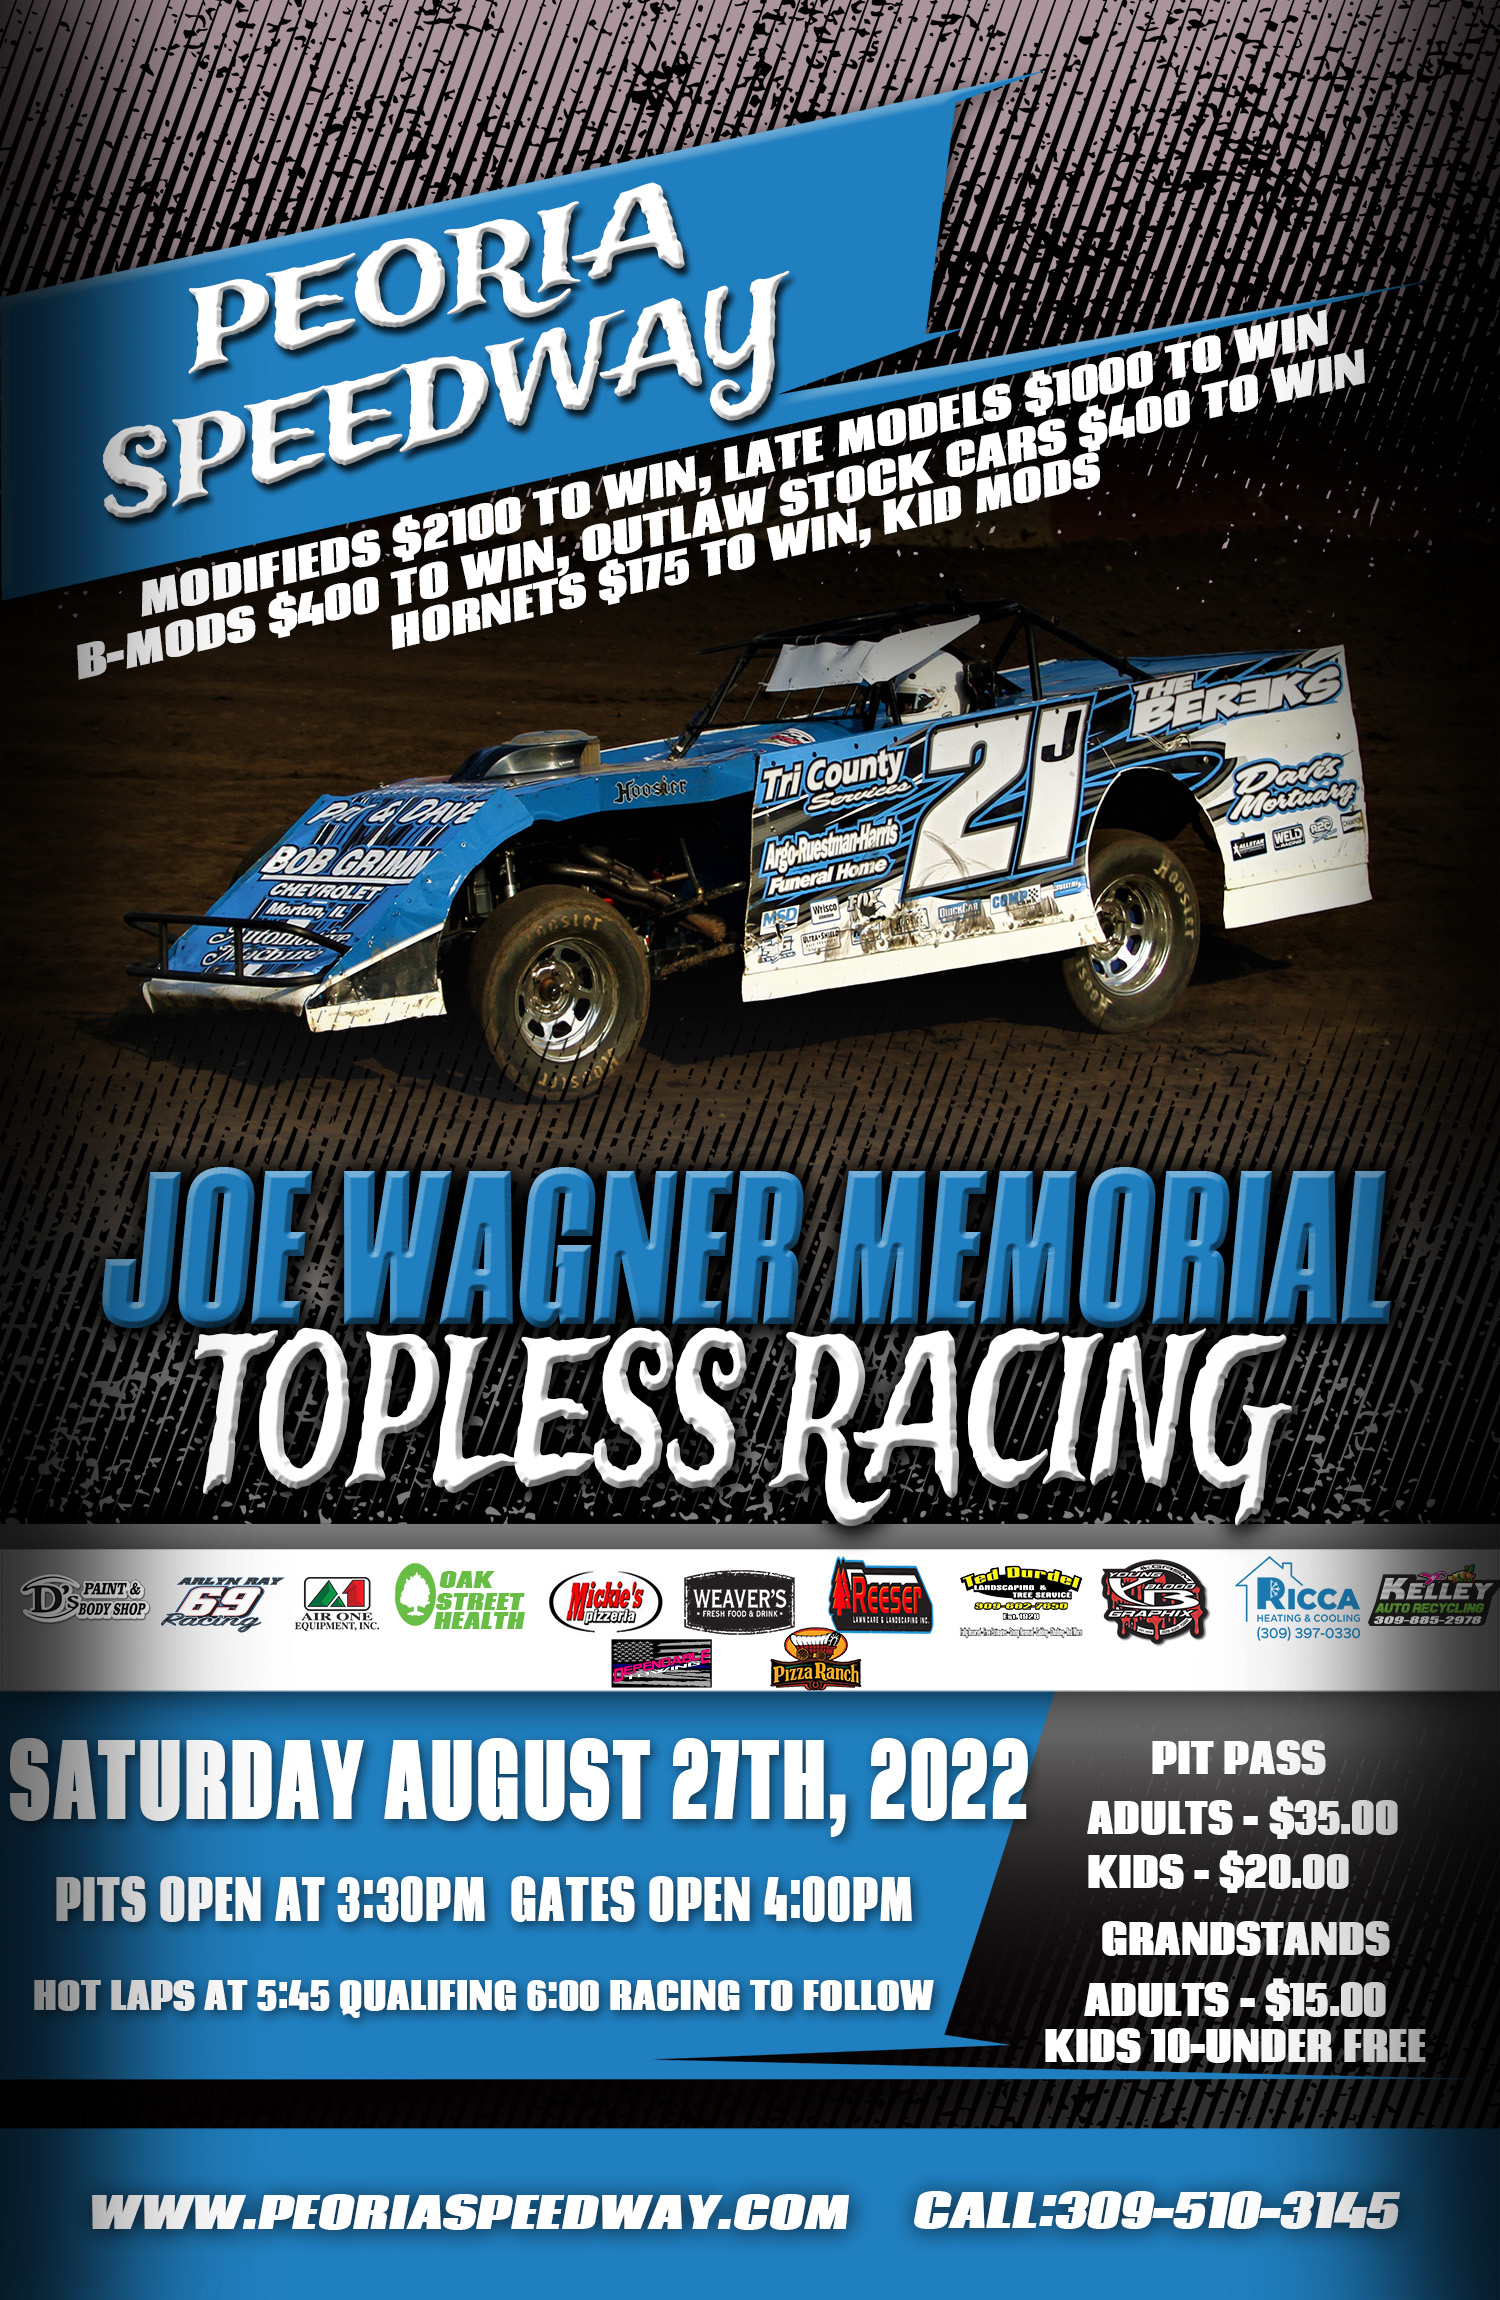 Joe Wagner Memorial Topless Racing post thumbnail image